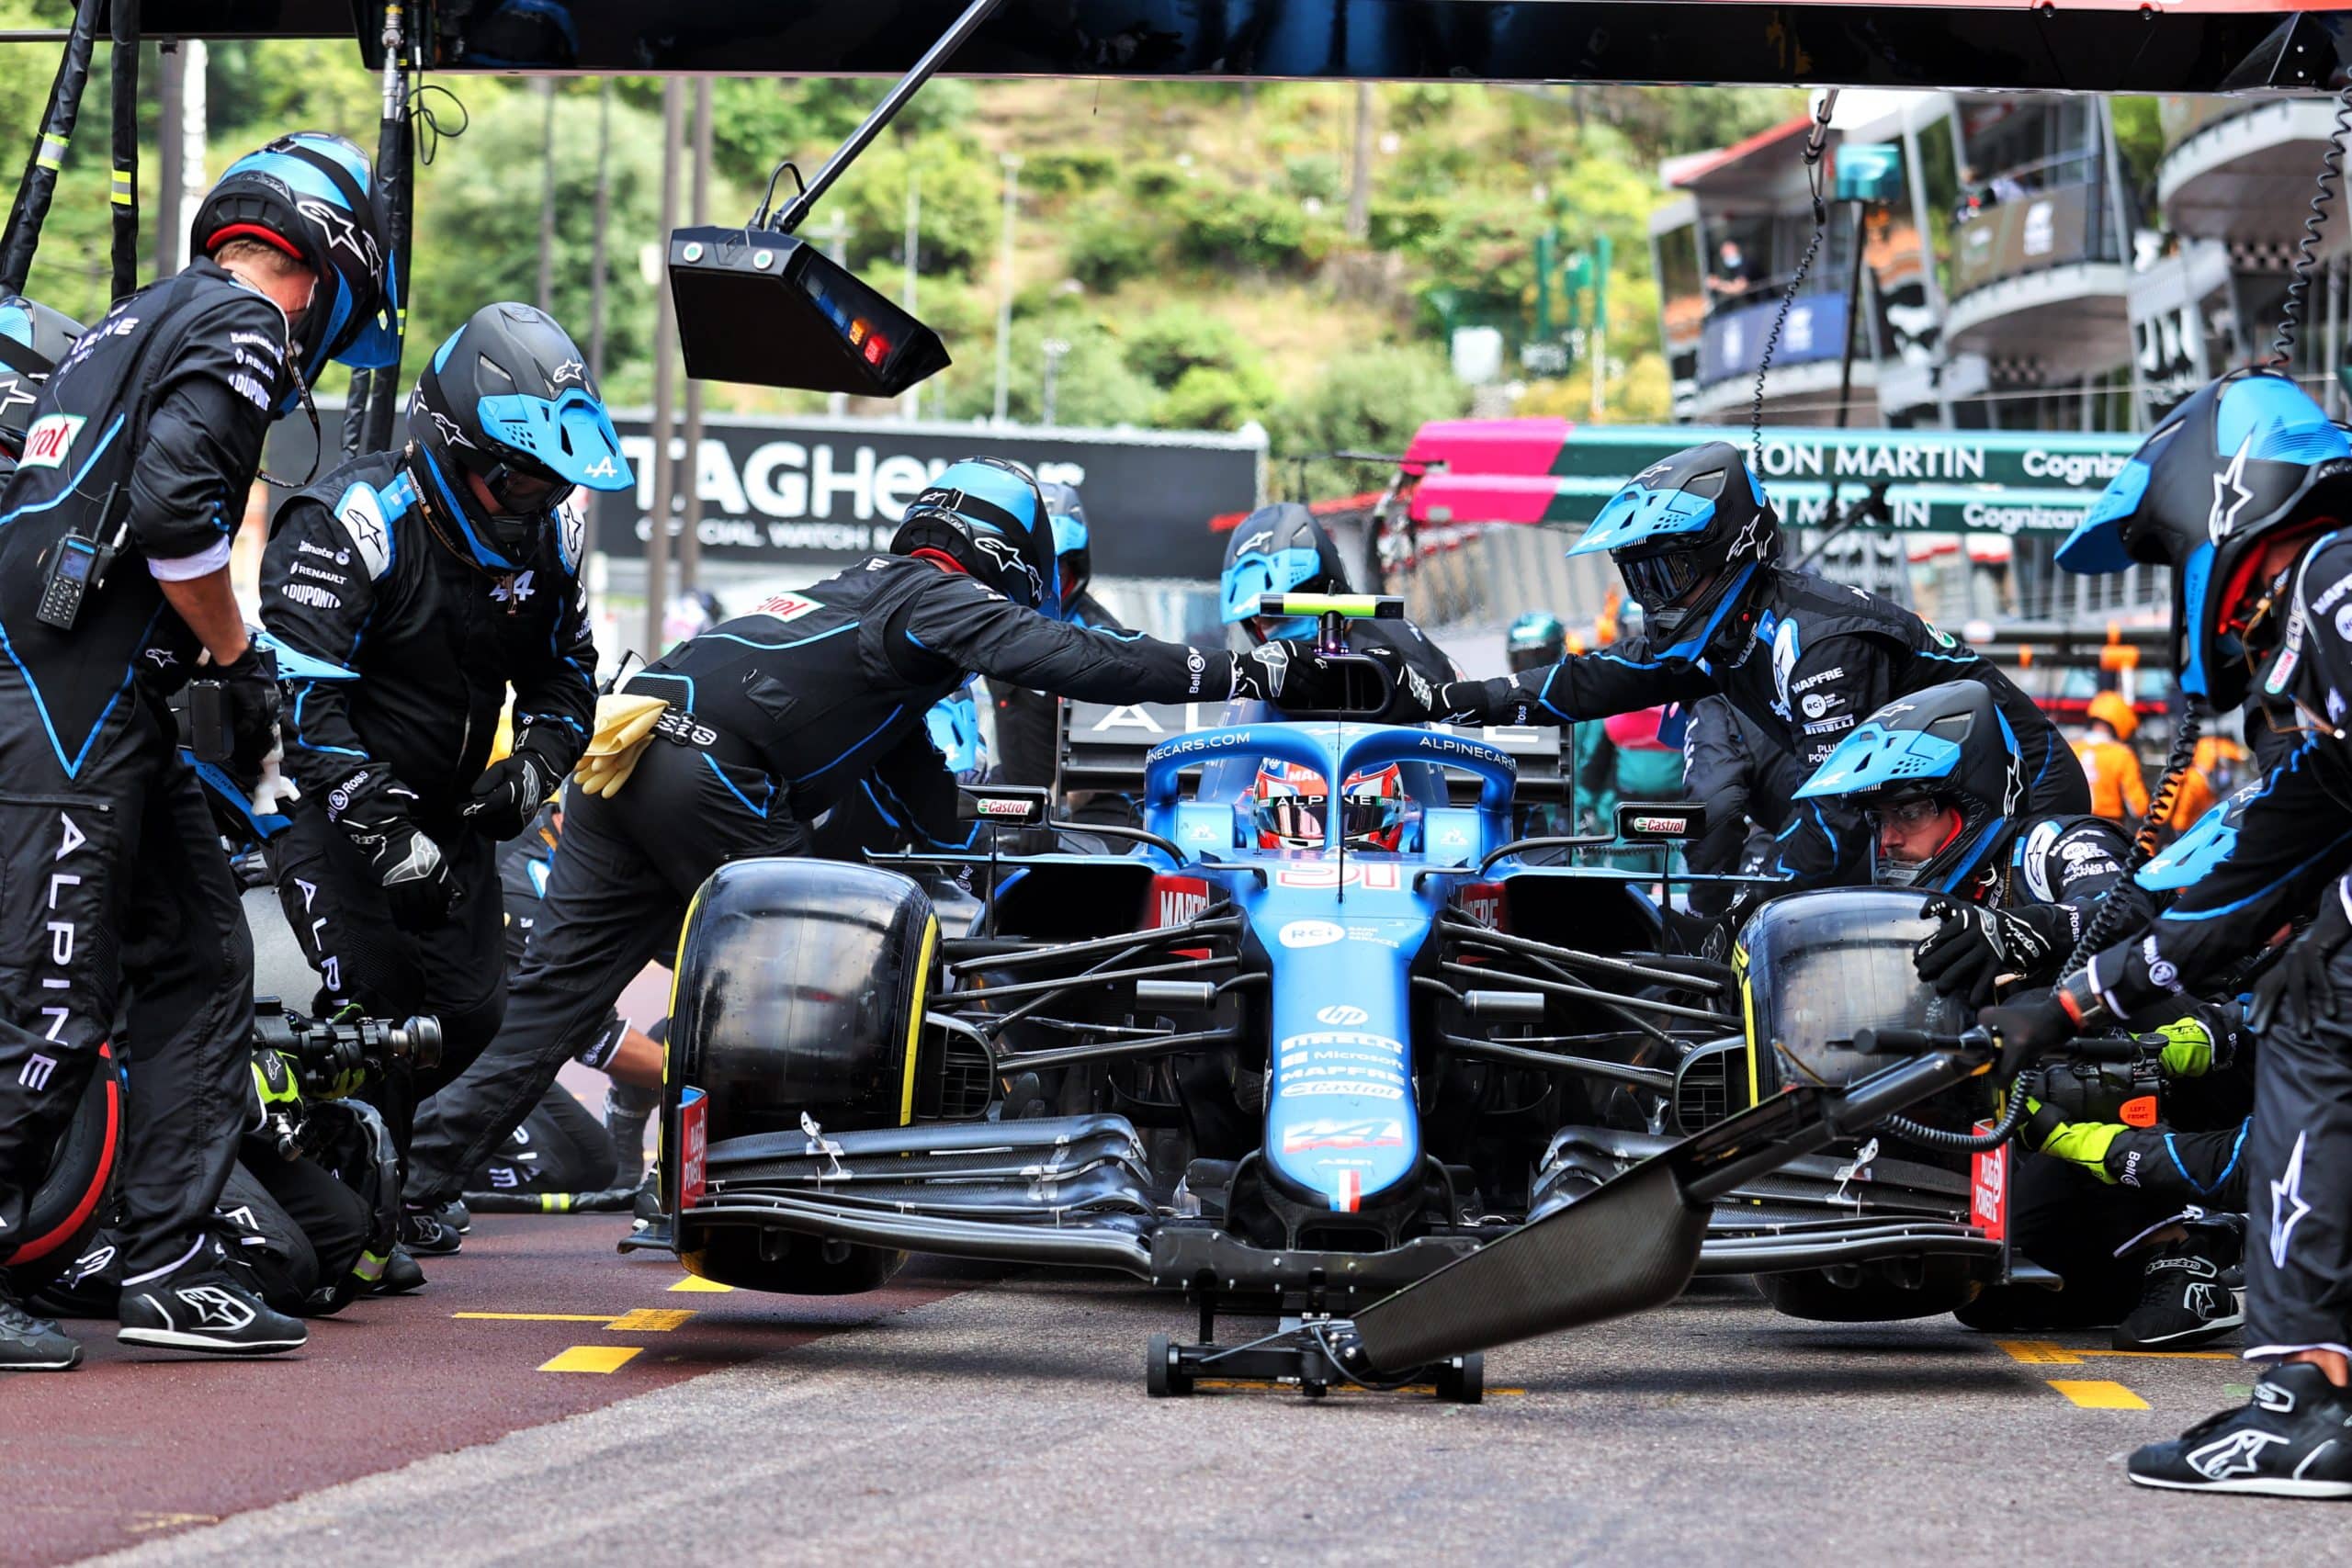 2021 Monaco Grand Prix, Sunday - Esteban Ocon